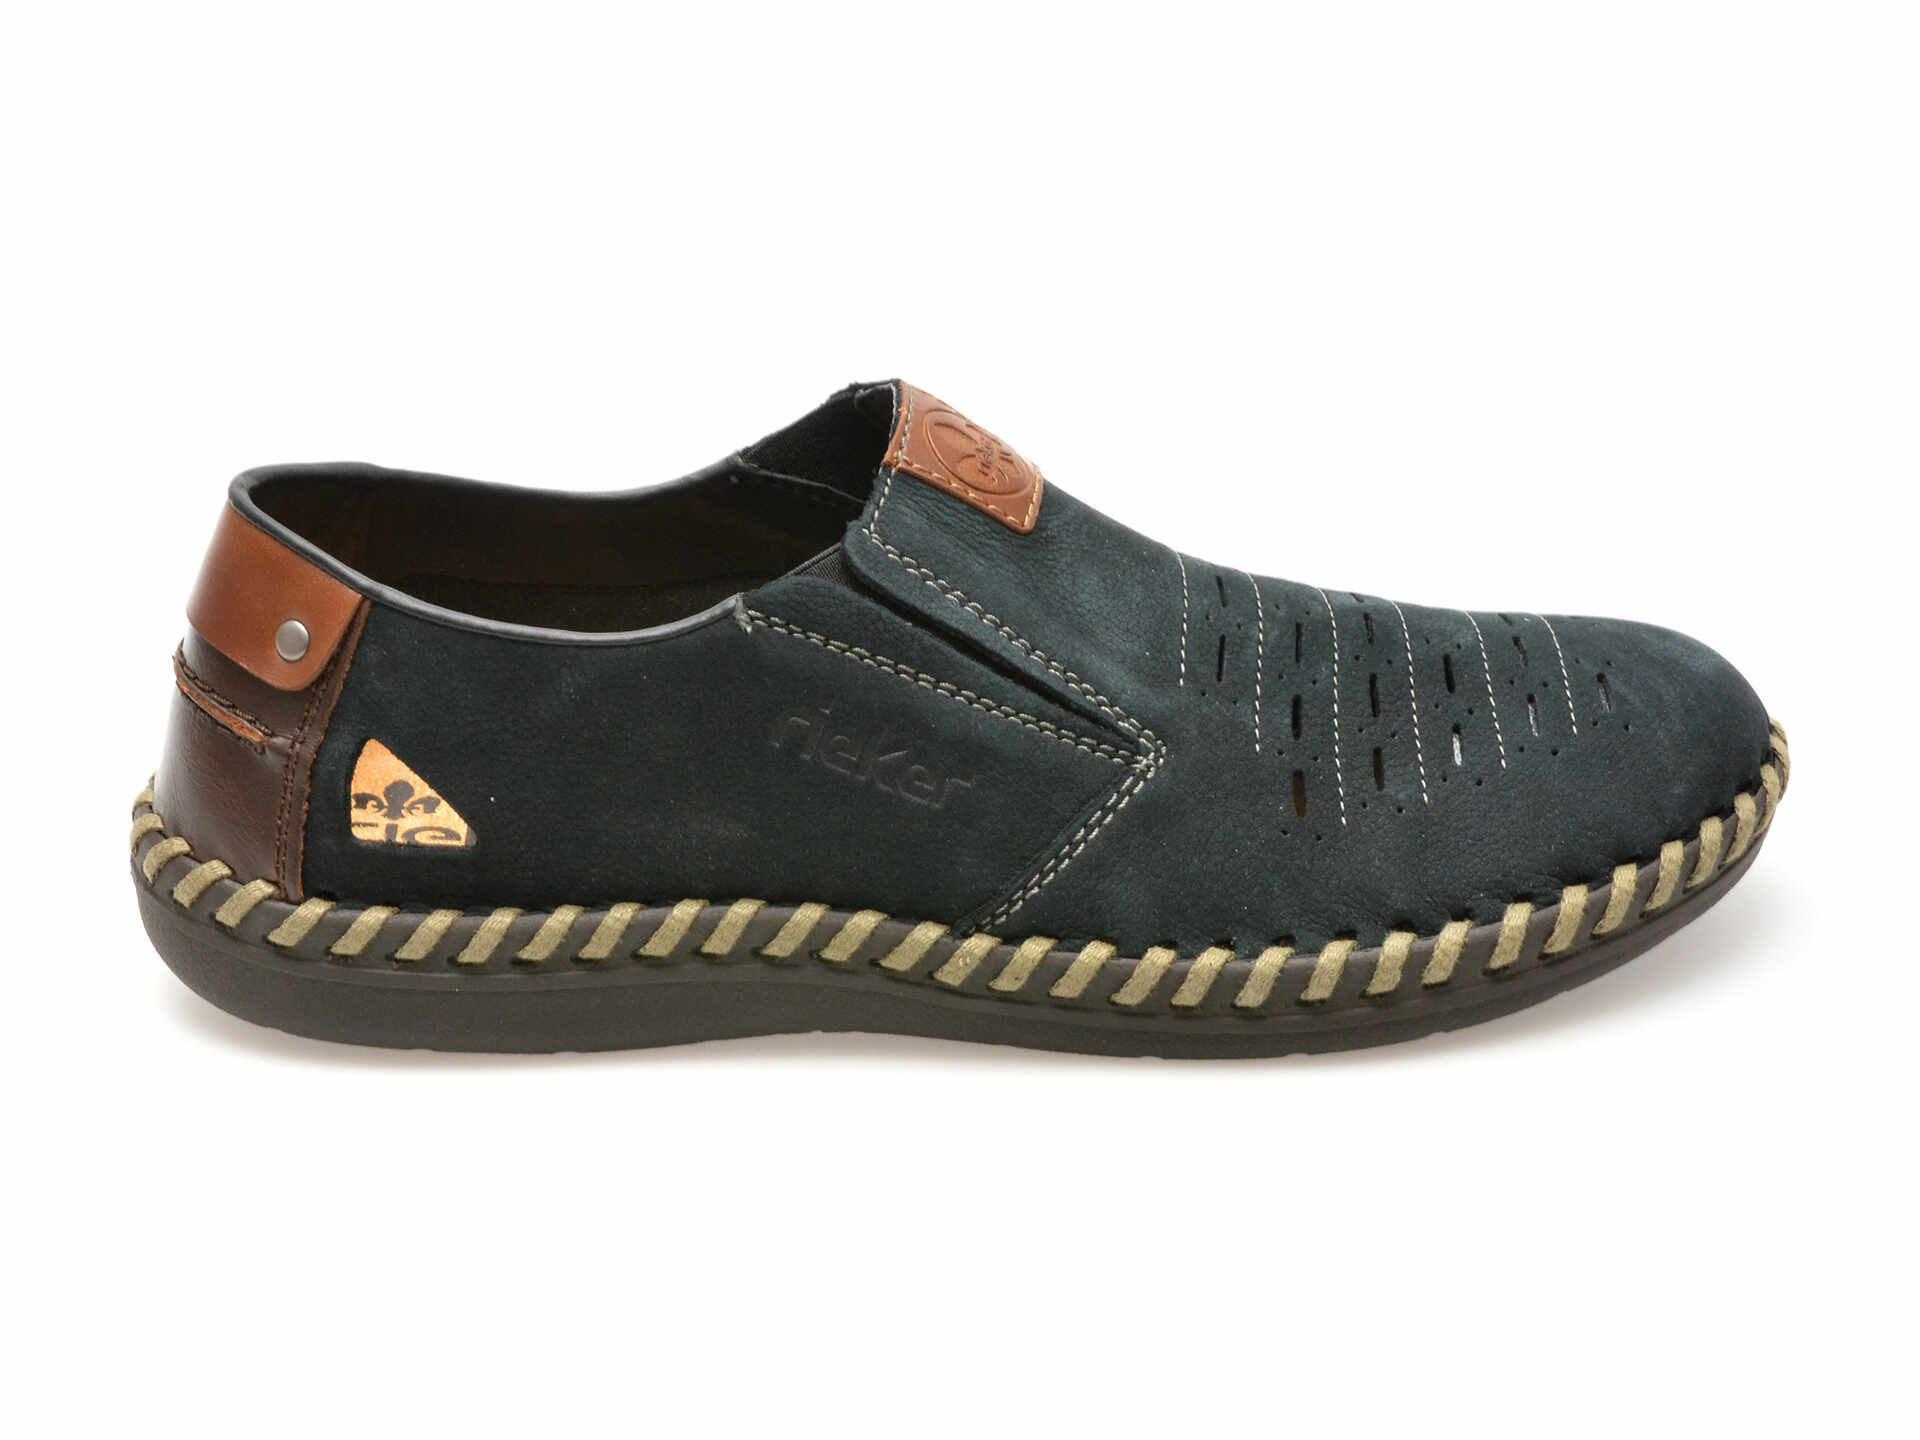 Pantofi casual RIEKER bleumarin, B24571, din piele naturala